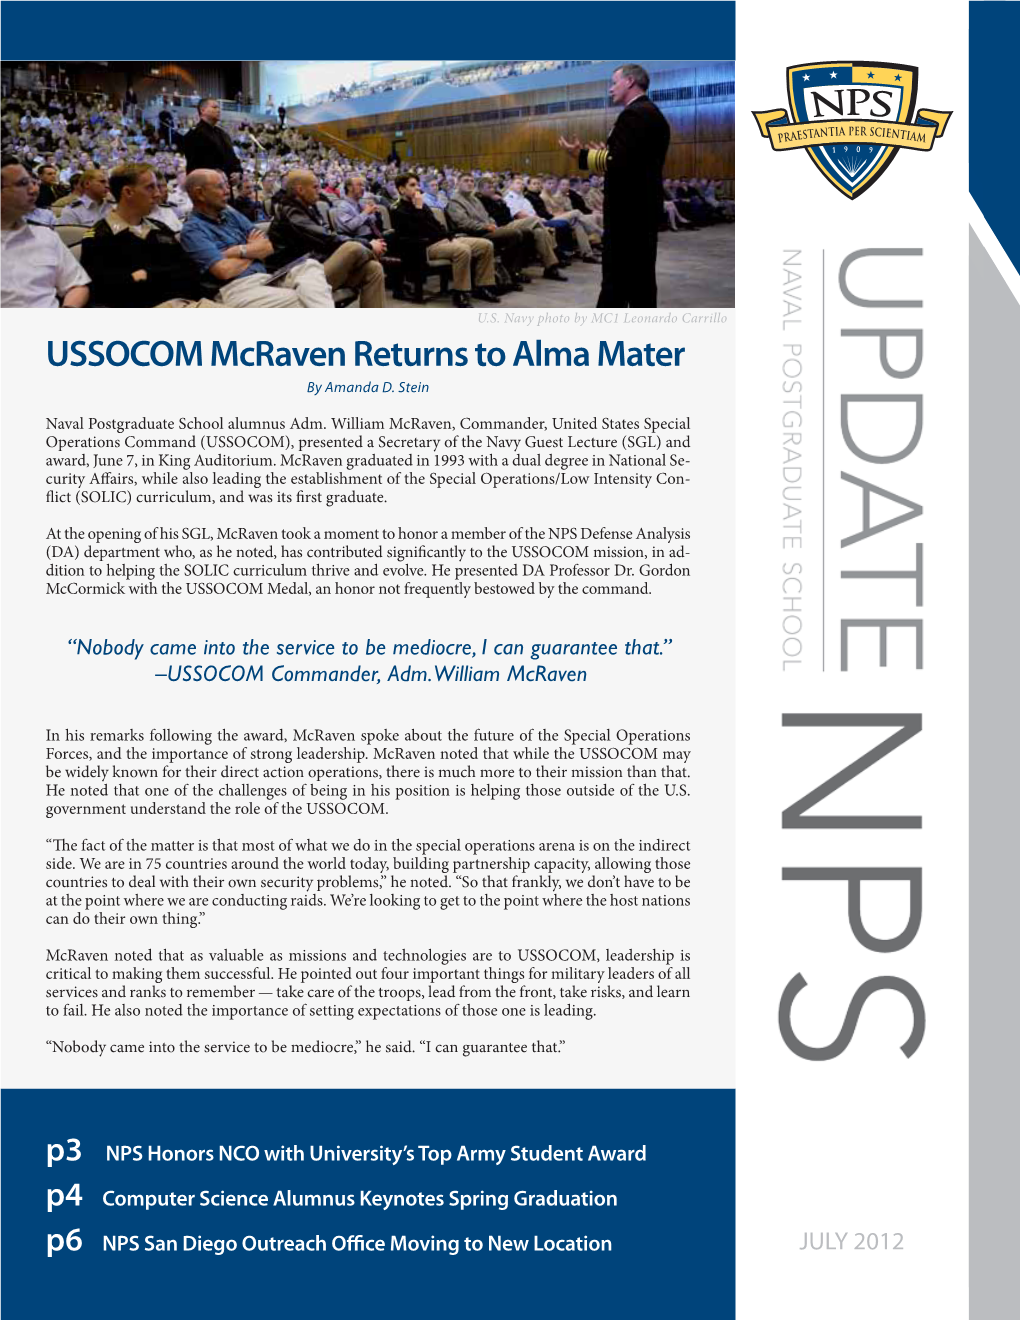 USSOCOM Mcraven Returns to Alma Mater by Amanda D